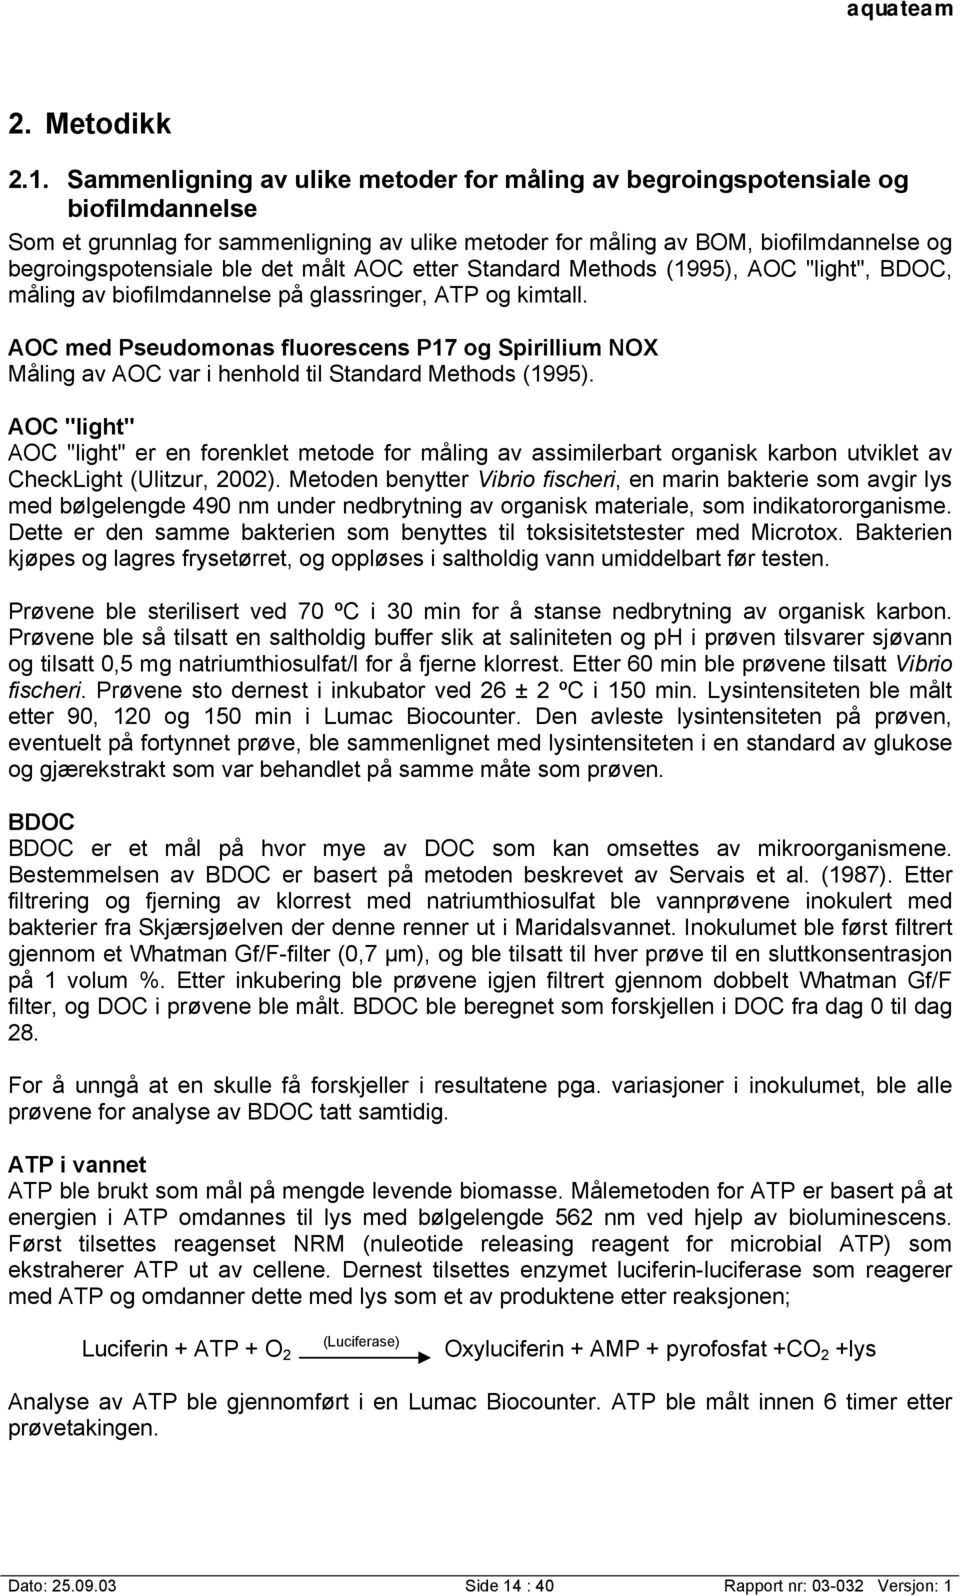 det målt AOC etter Standard Methods (1995), AOC "light", BDOC, måling av biofilmdannelse på glassringer, ATP og kimtall.